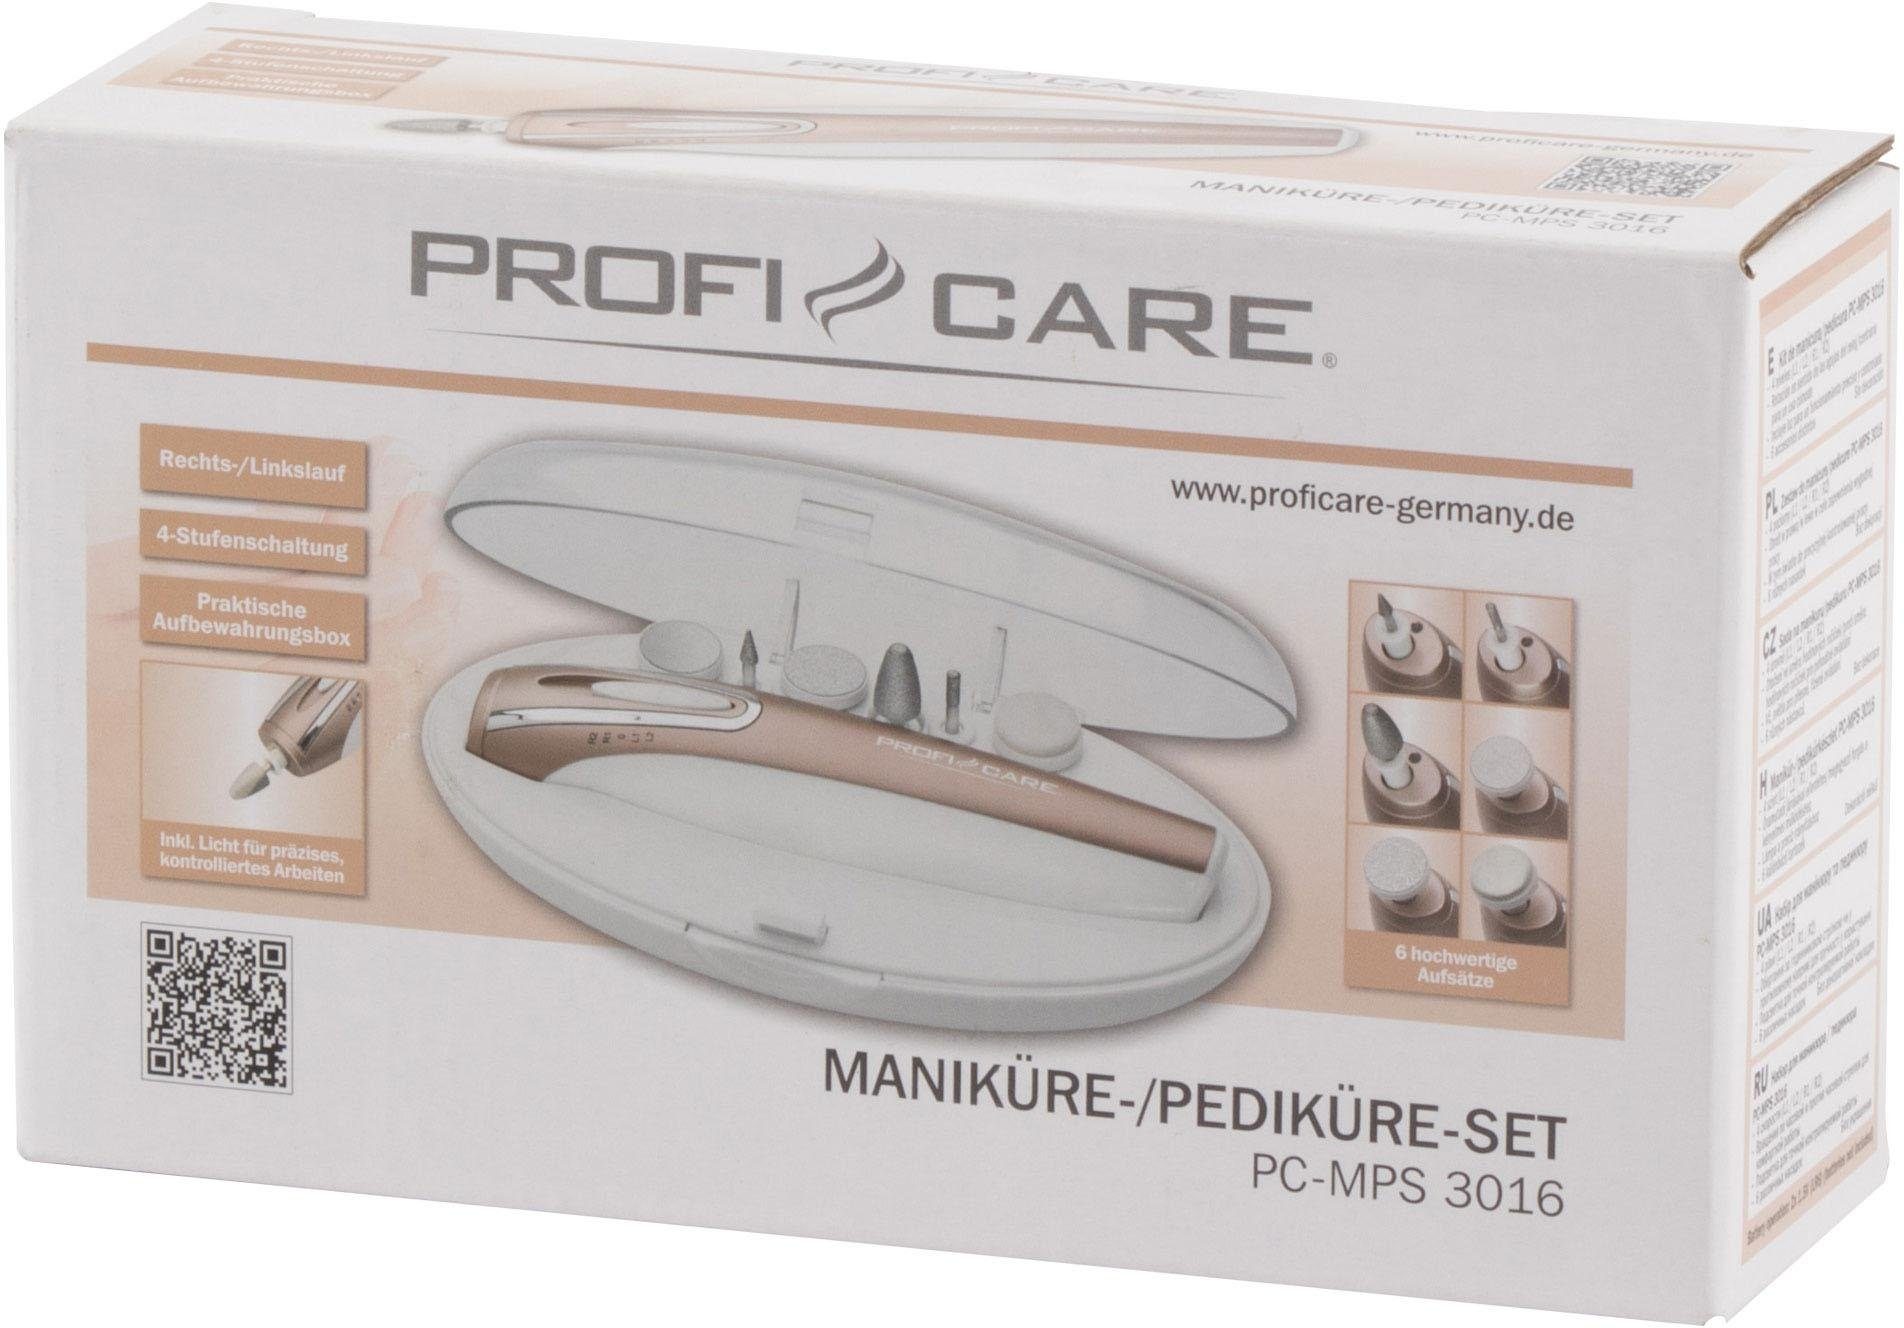 PC-MPS Maniküre-Pediküre-Set ProfiCare 3016